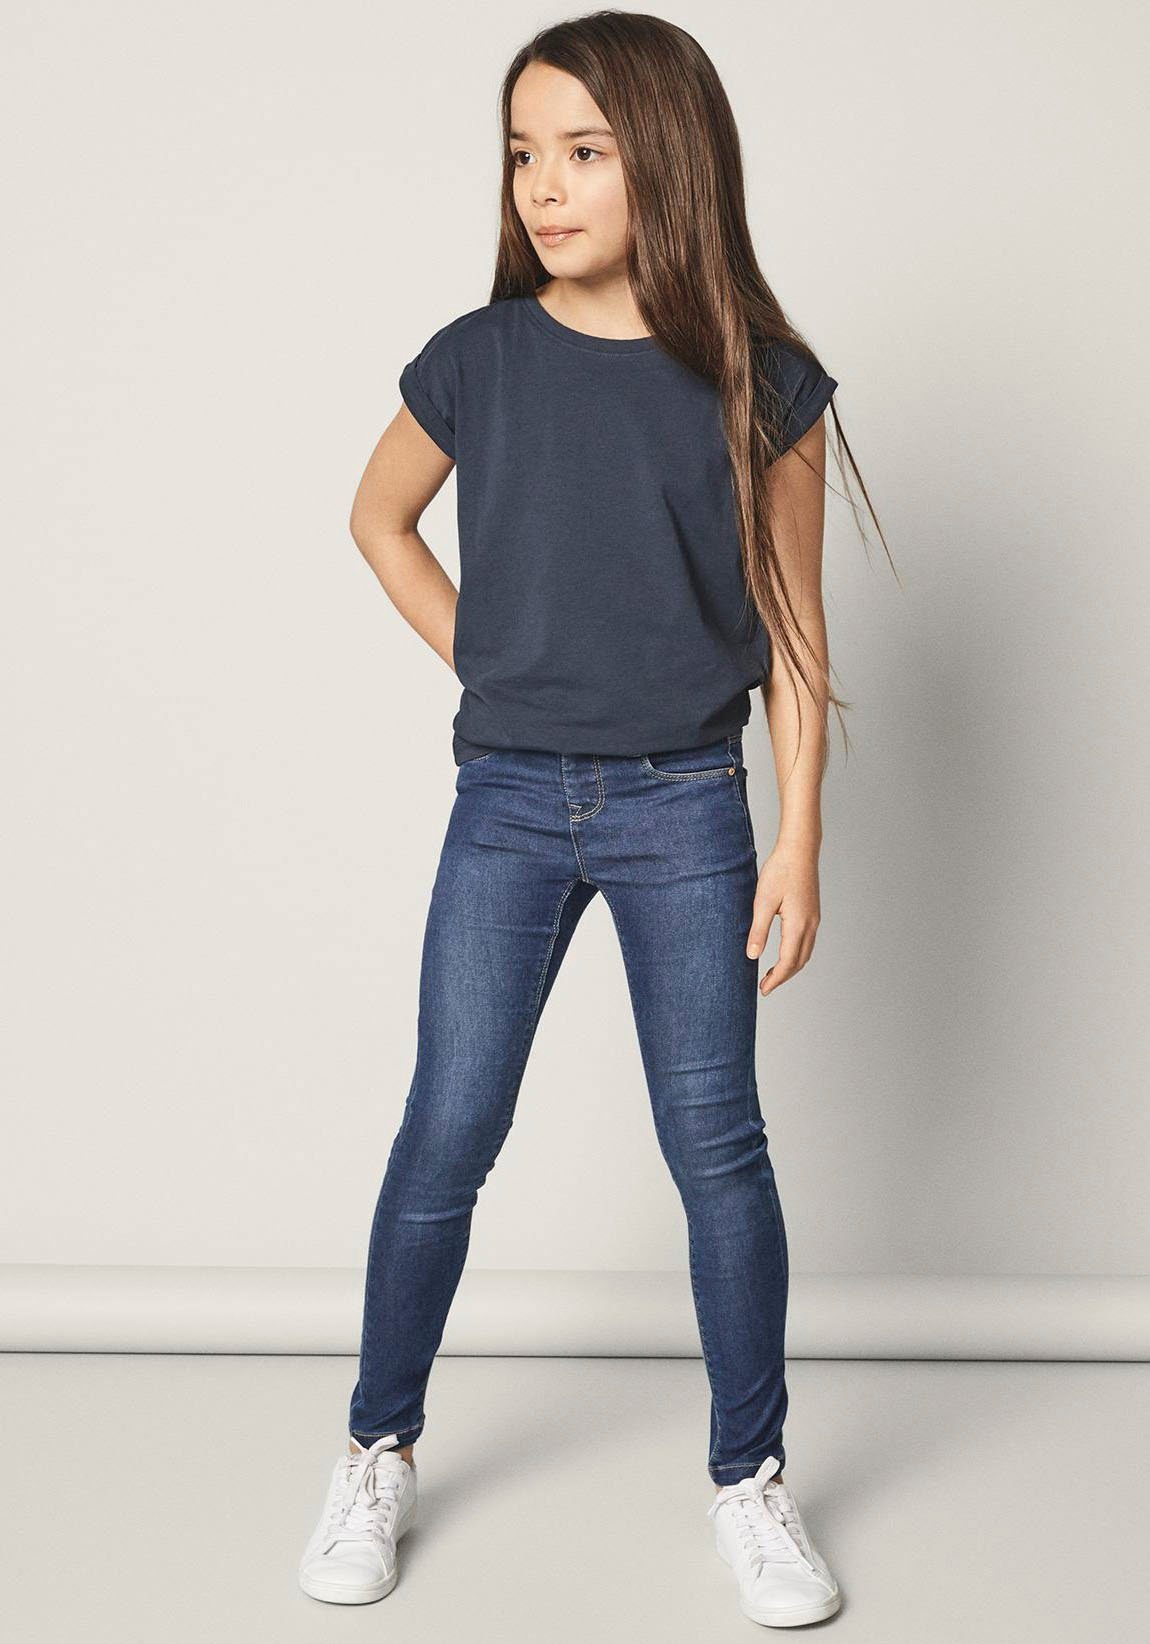 Mädchen Skinny-Jeans online kaufen | OTTO